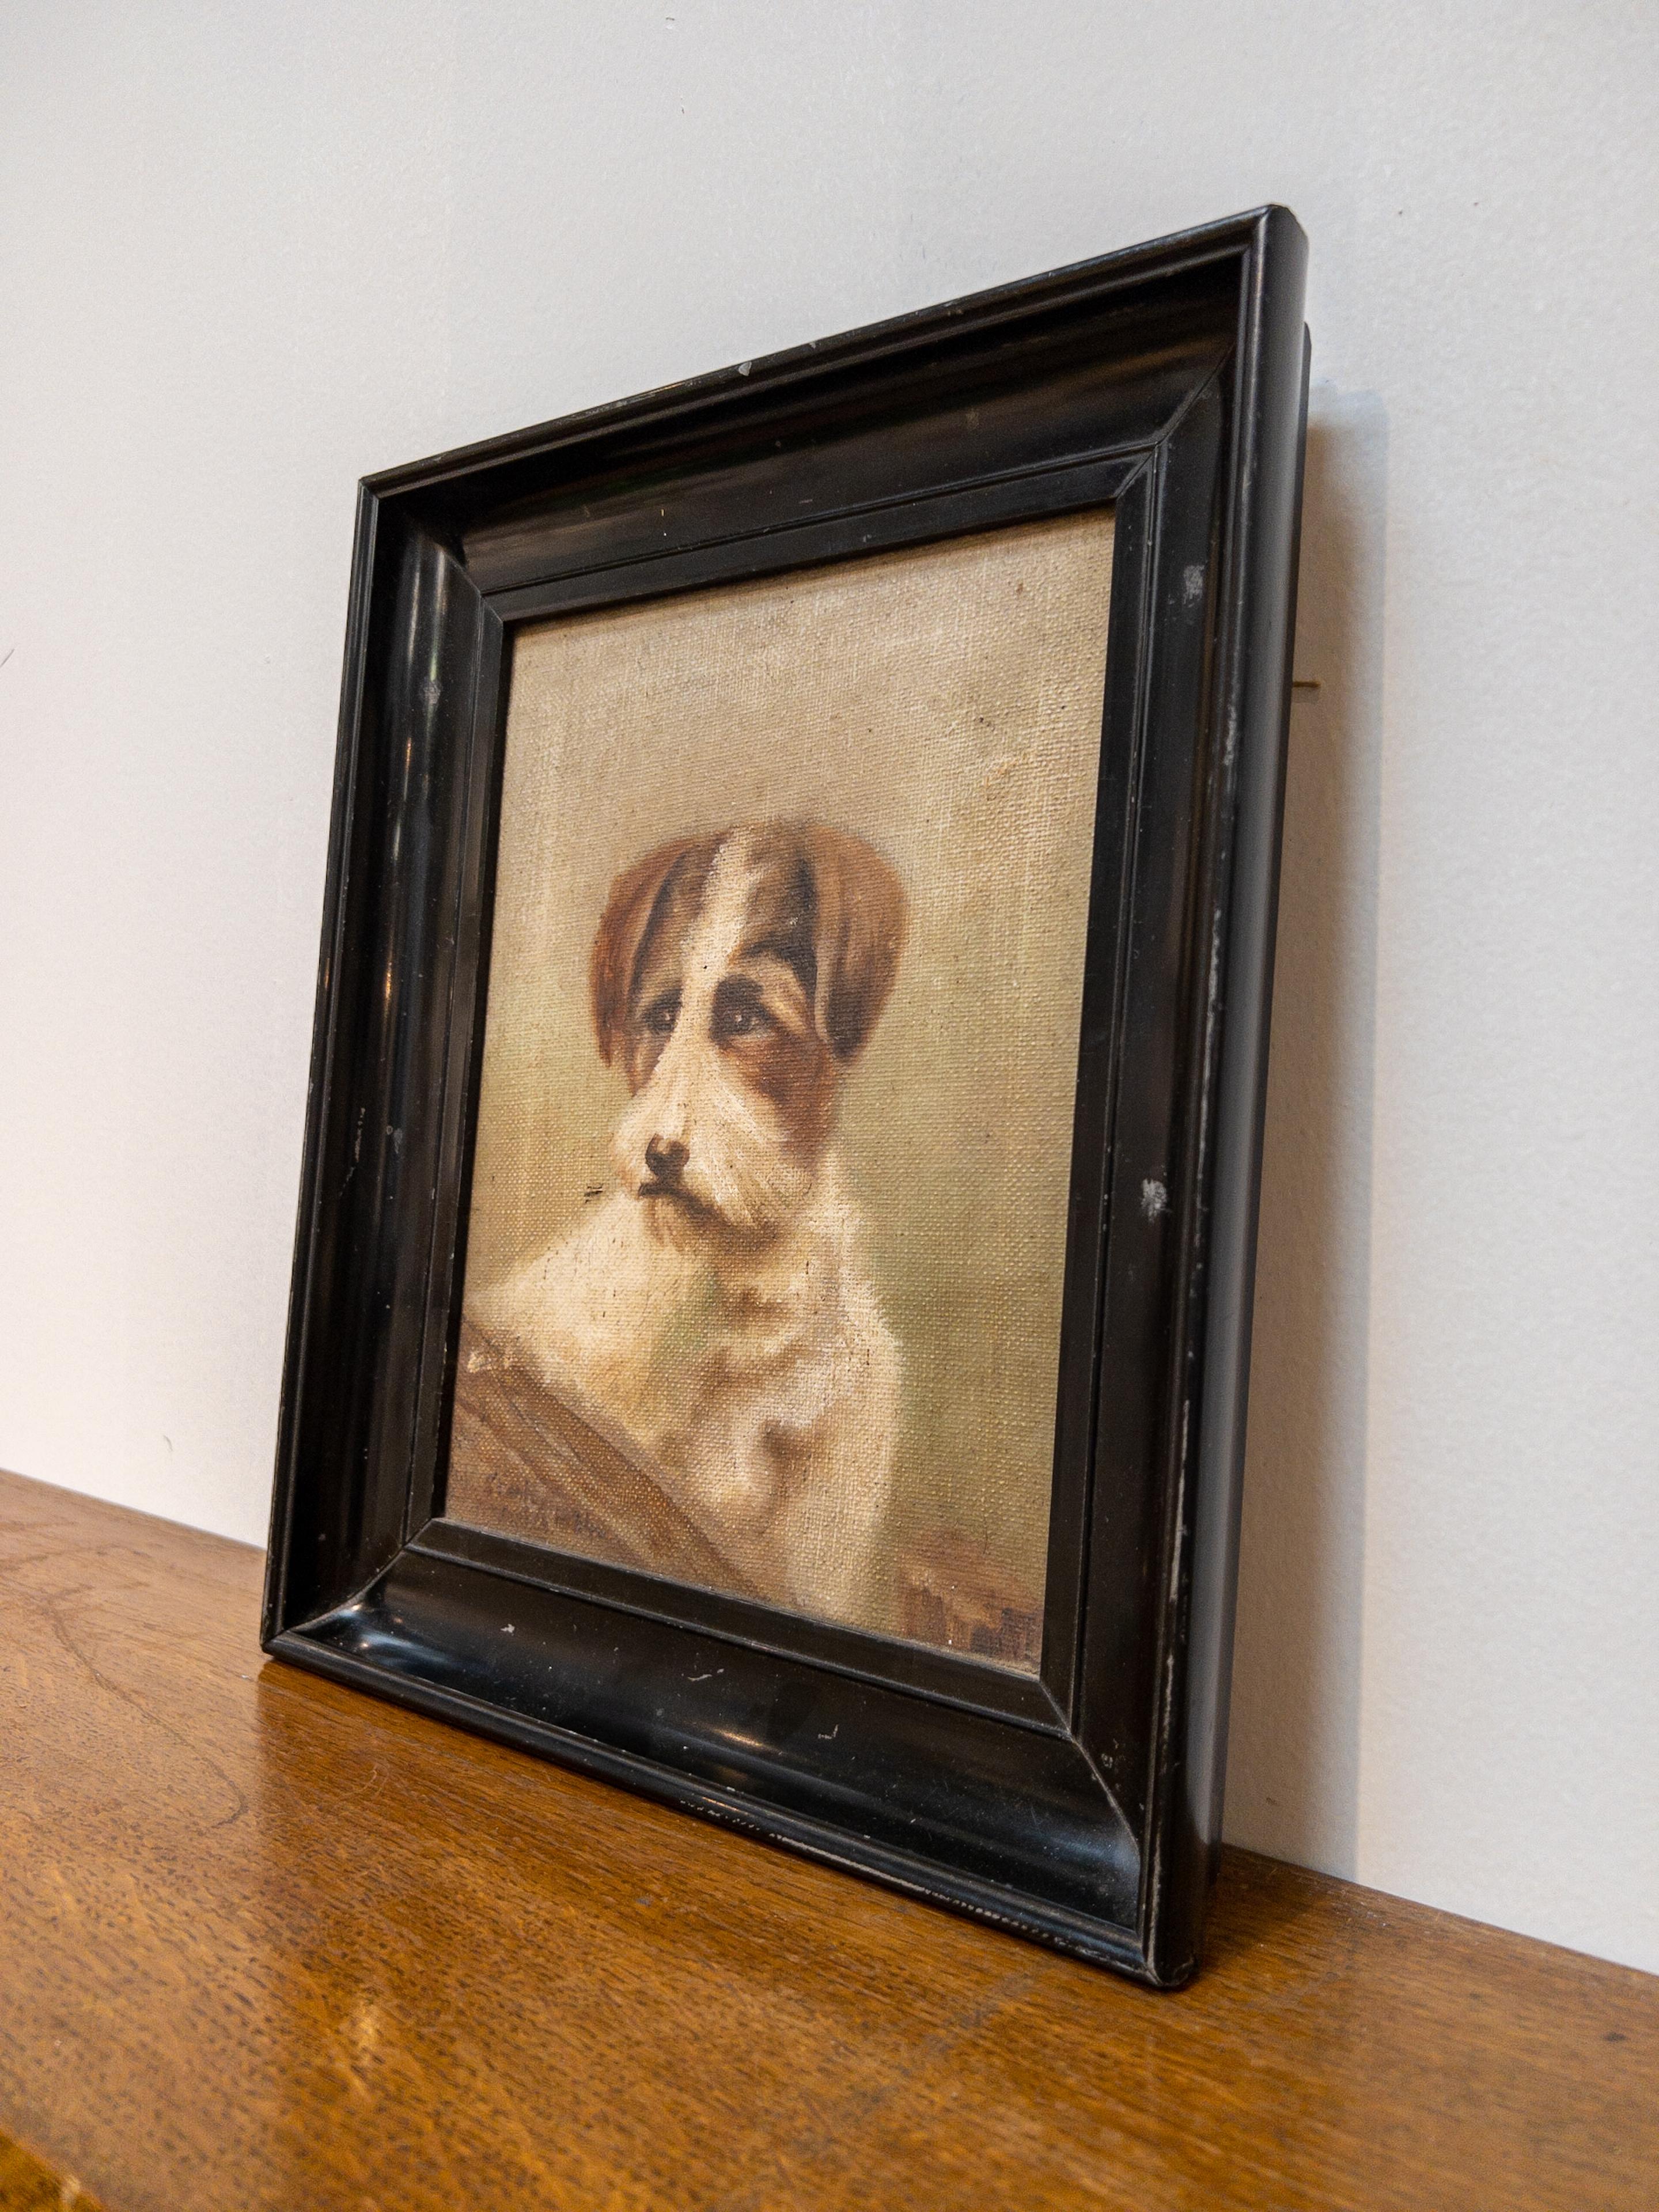 Huile sur toile des années 1920 Terrier anglais

Représentation vivante de l'époque des années 1920, cette peinture à l'huile sur toile capture l'essence fougueuse d'un terrier anglais avec une finesse remarquable. Les traits habiles de l'artiste